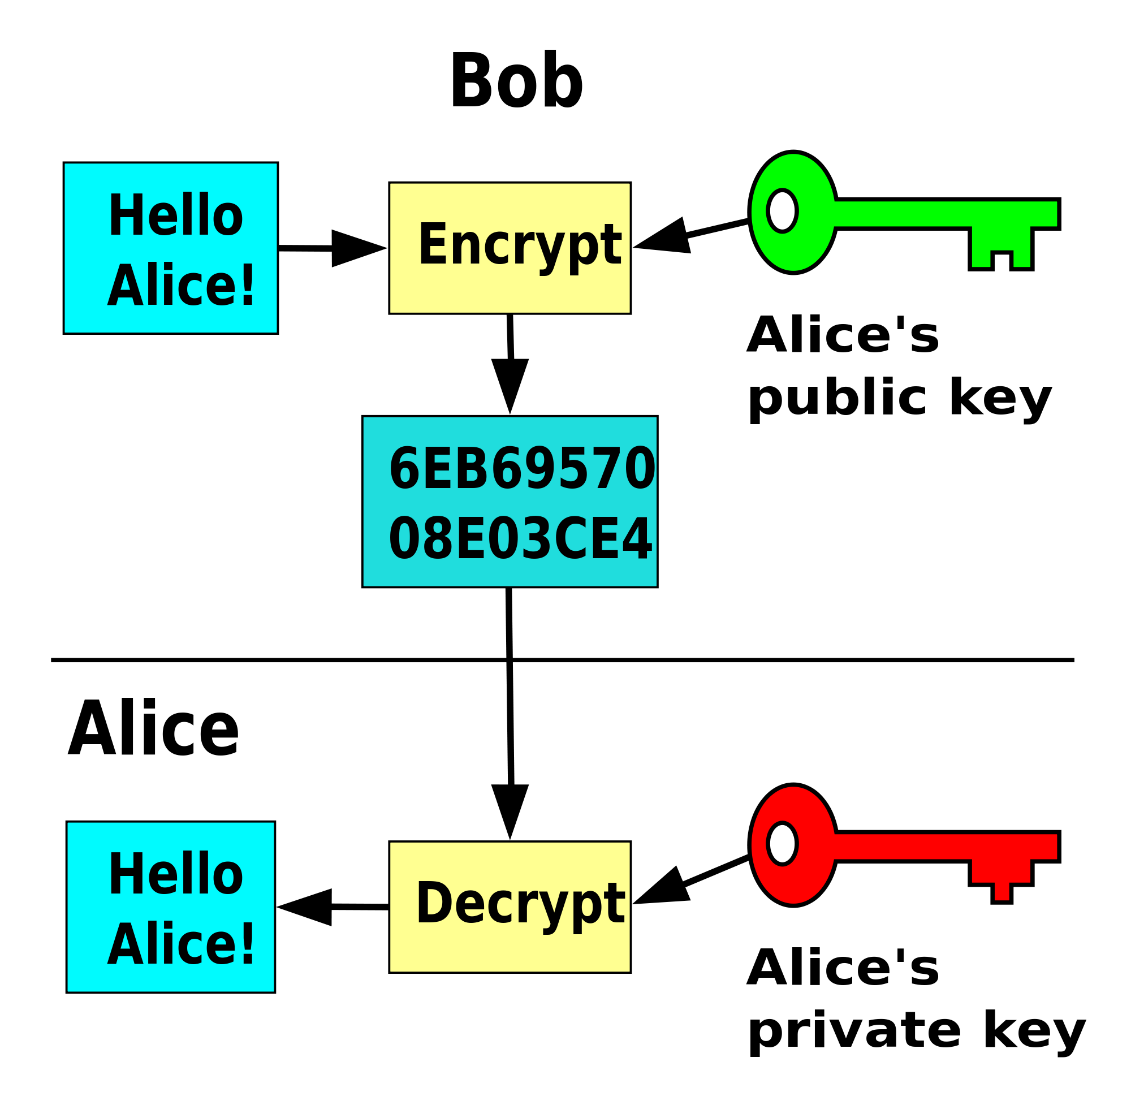 Bei asymmetrischen Methoden gibt es nicht einen Schlüssel zum verund entschlüsseln, sondern zwei; einen öffentlichen Schlüssel, der für jeden zugänglich ist, und einen privaten Schlüssel, der geheim